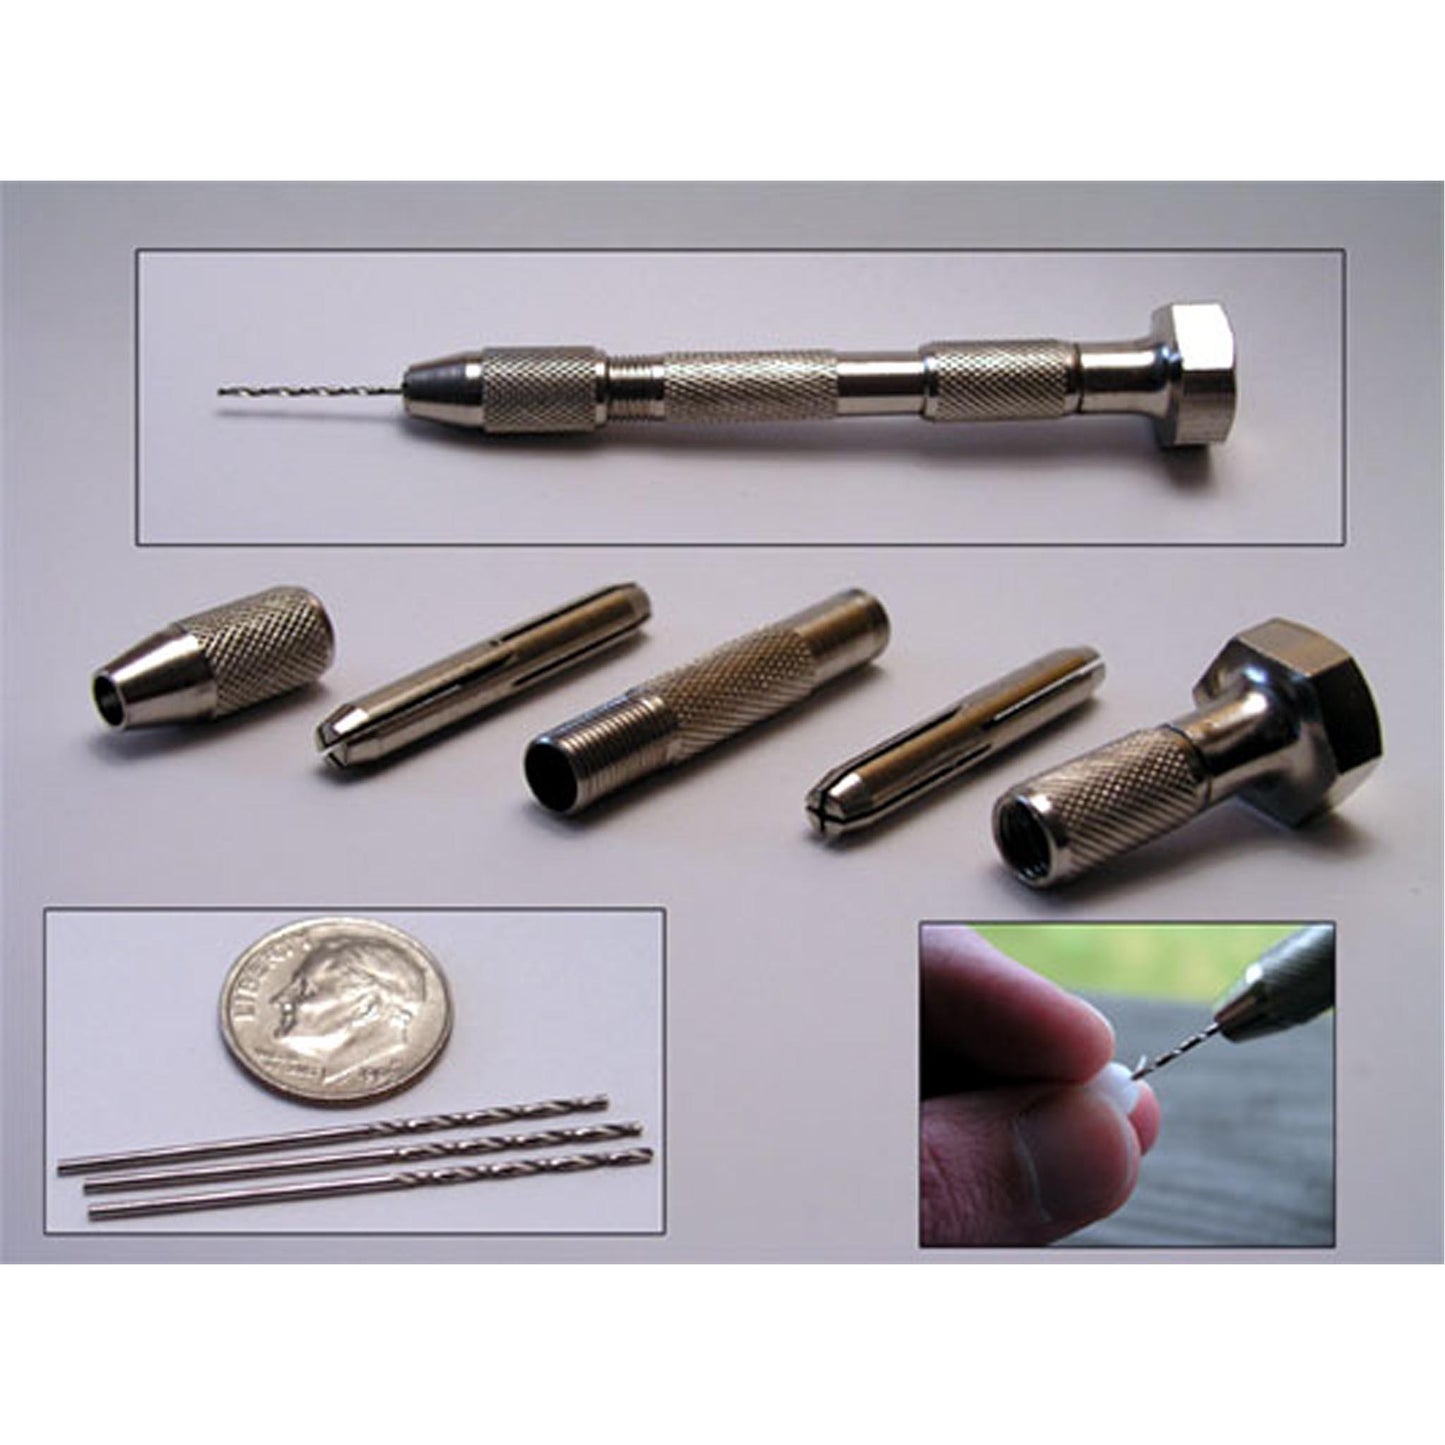 Pin Vice Drill Kit and Three 1mm Drill Bits